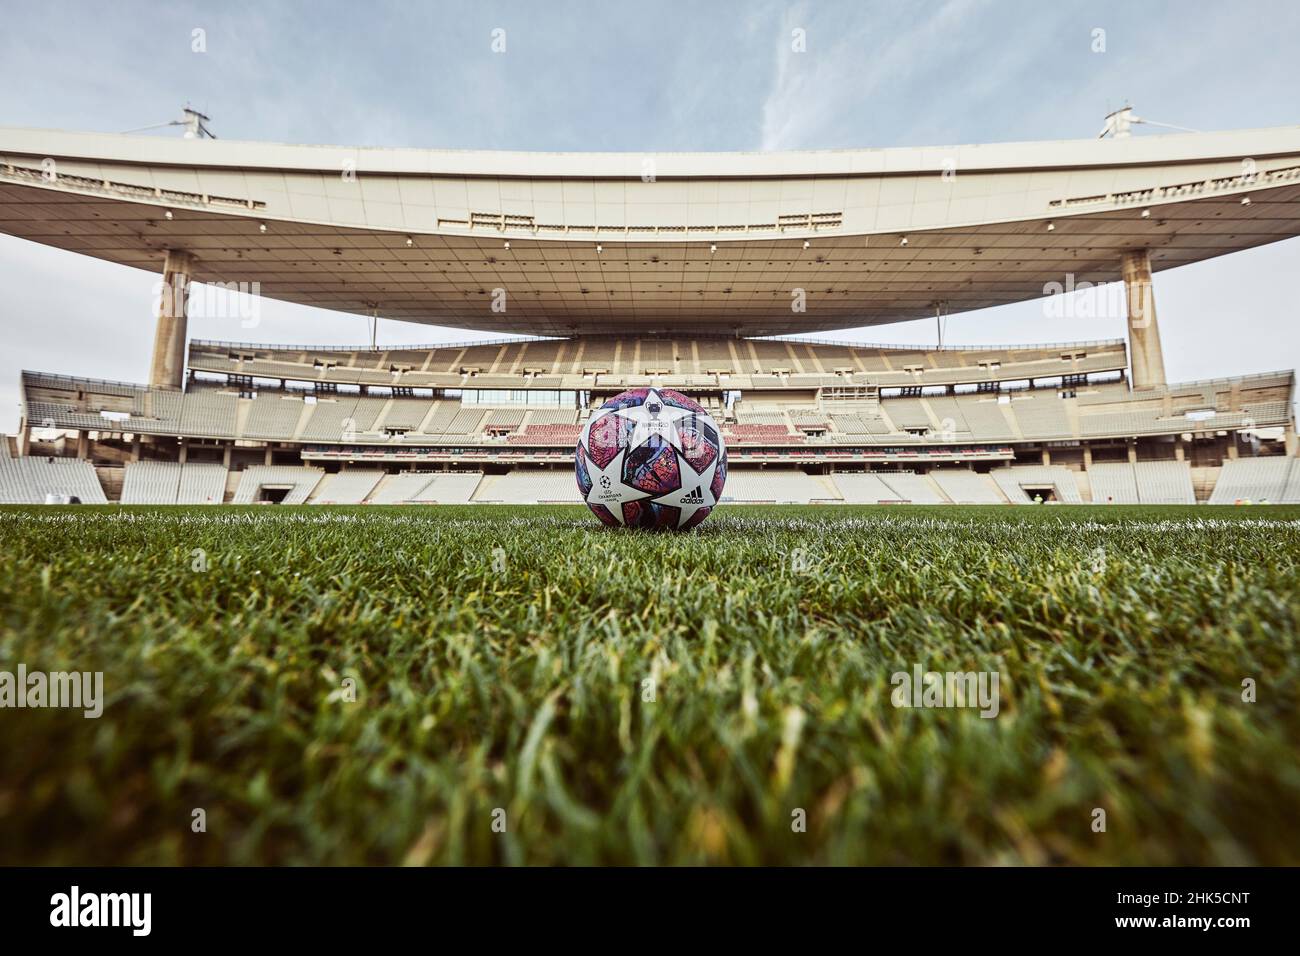 Fußball: Adidas-Finale, offizieller Spielball für die K.O.-Phase und das Finale der UEFA Champions League 2020 in Istanbul Stockfoto